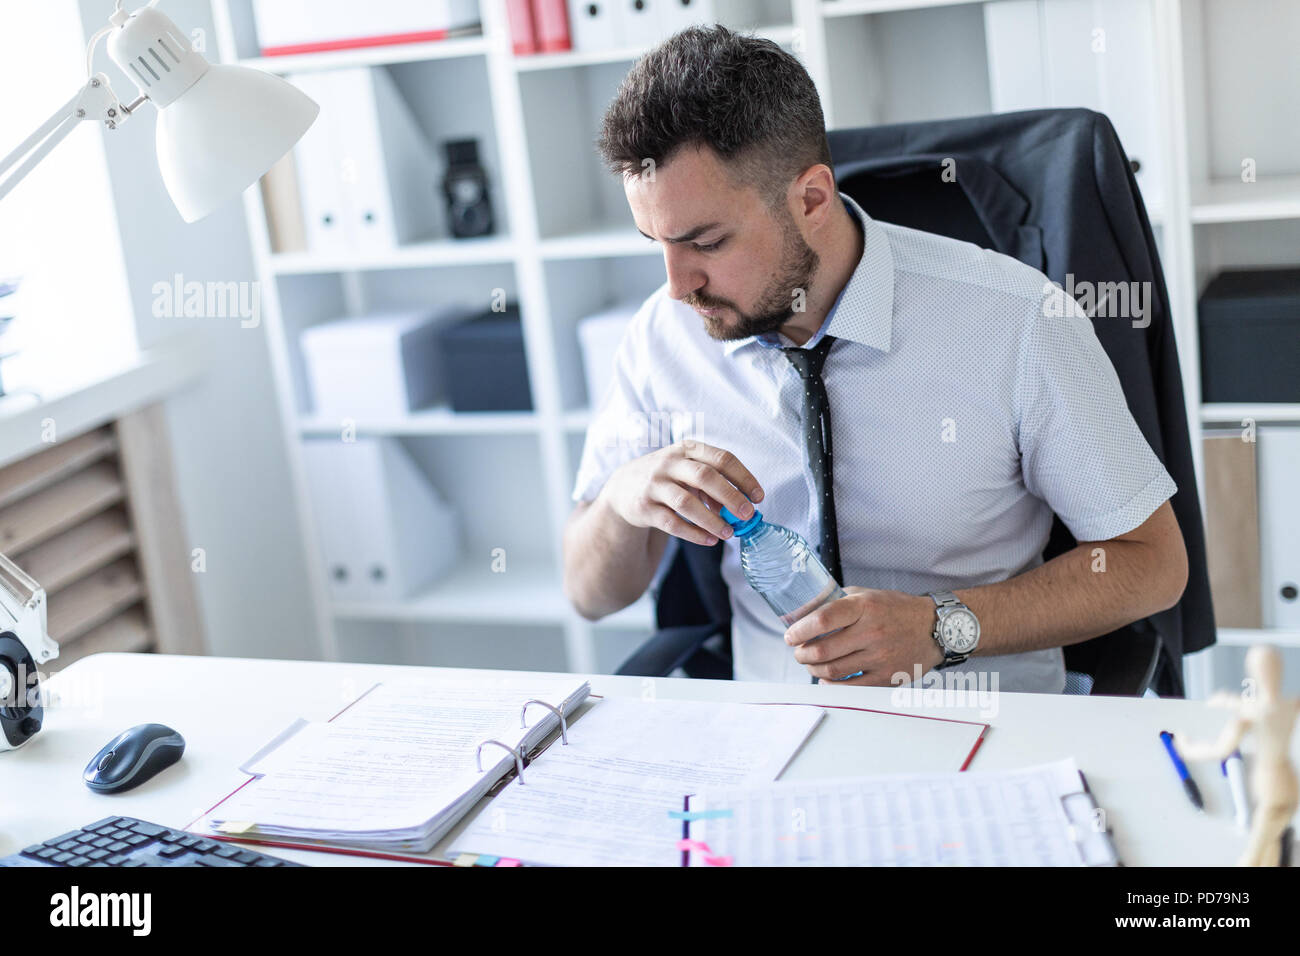 Un homme est assis à une table dans le bureau, travailler sur des documents et l'ouverture d'une bouteille d'eau. Banque D'Images